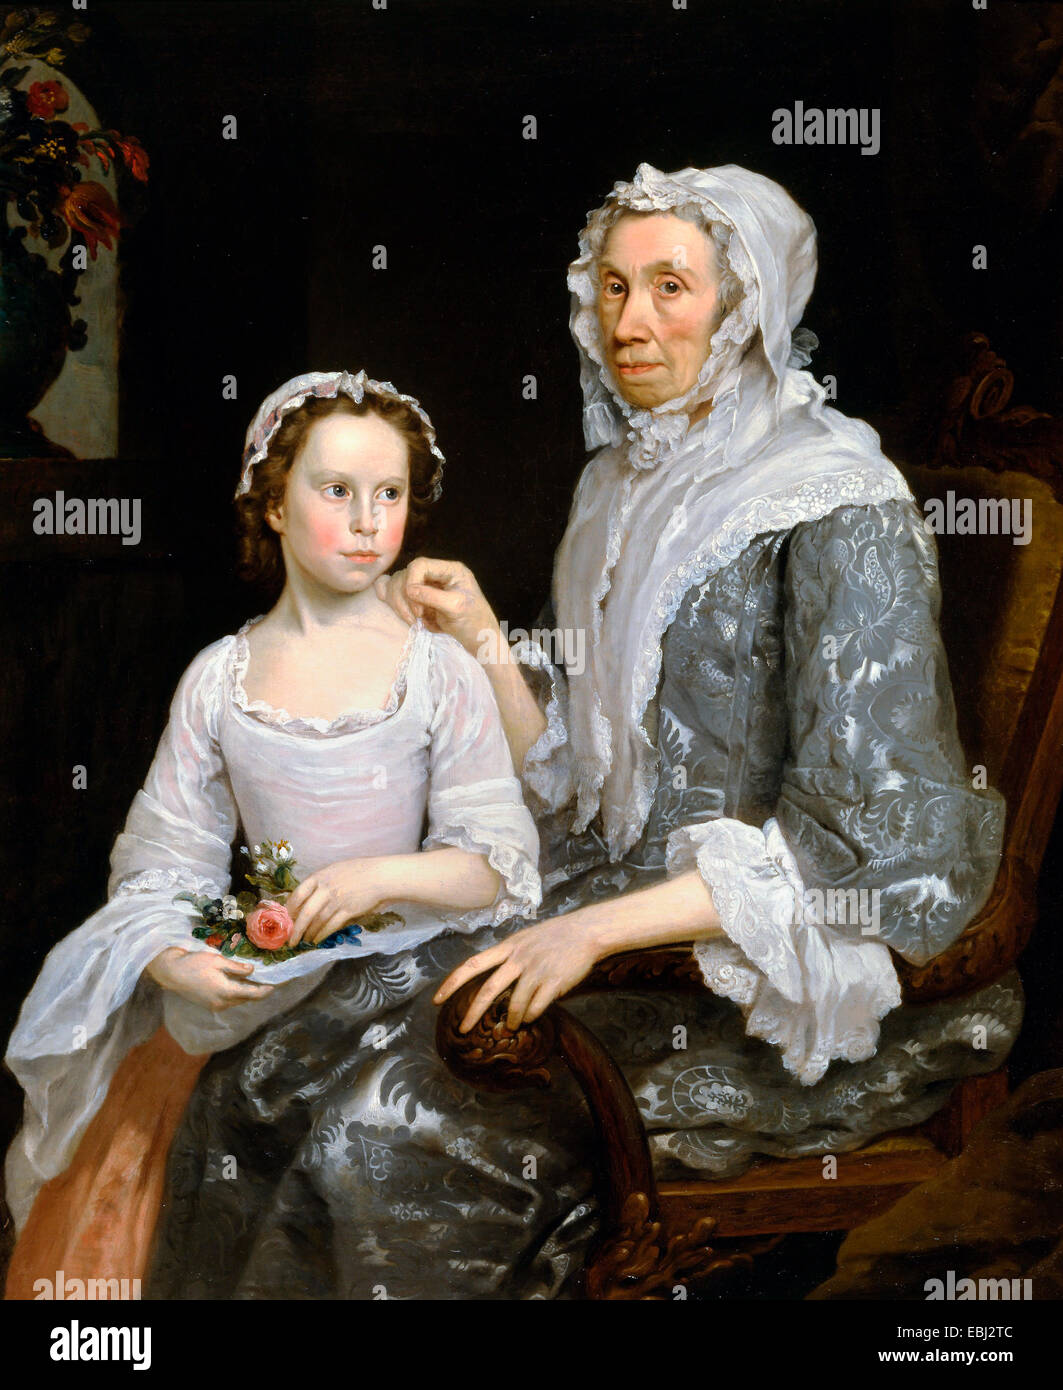 George Beare, Portrait einer älteren Dame und ein Mädchen 1747-Öl auf Leinwand. Yale Center for British Art, New Haven, USA. Stockfoto